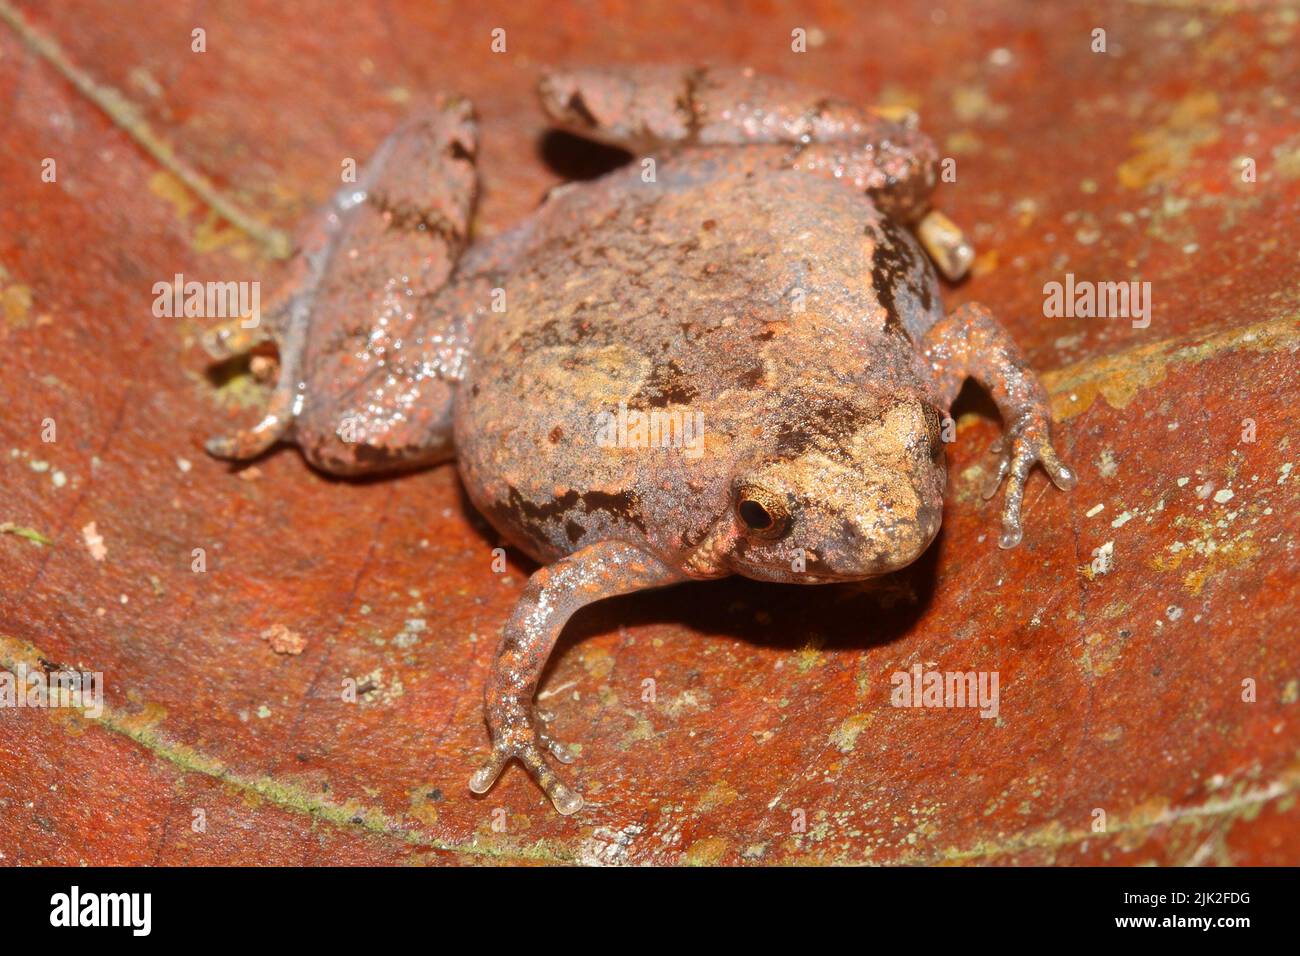 Matang-Schmalmäugiger Frosch - Microhyla borneensis in natürlichem Lebensraum Stockfoto